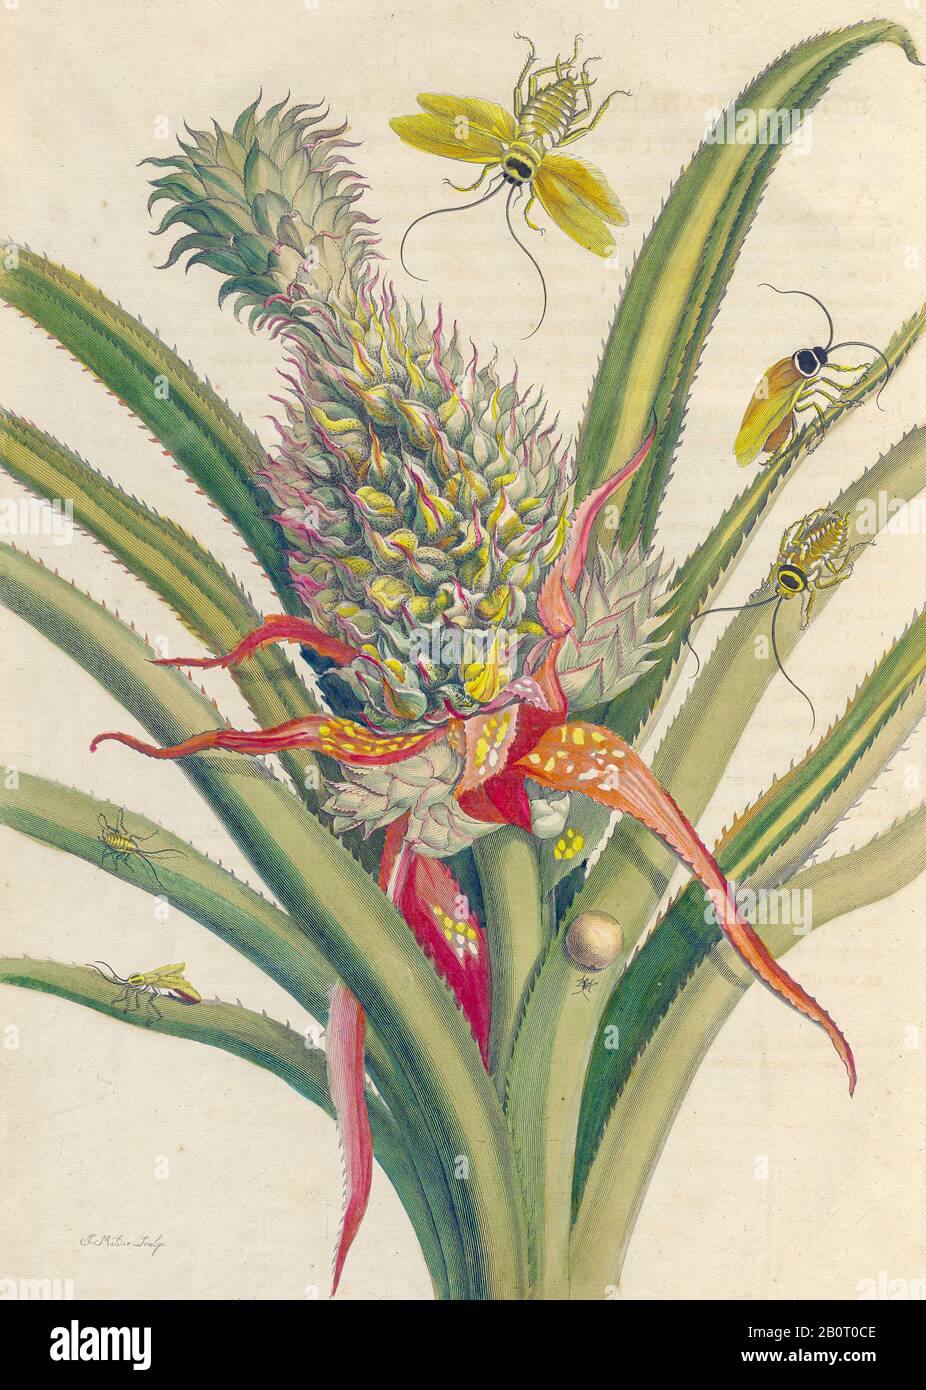 Ananas und Schmetterlinge aus Metamorphosis insectorum Surinamensium (Surinam-Insekten) ein handfarbenes Buch aus dem 18. Jahrhundert von Maria Sibilla Merian Publ Stockfoto